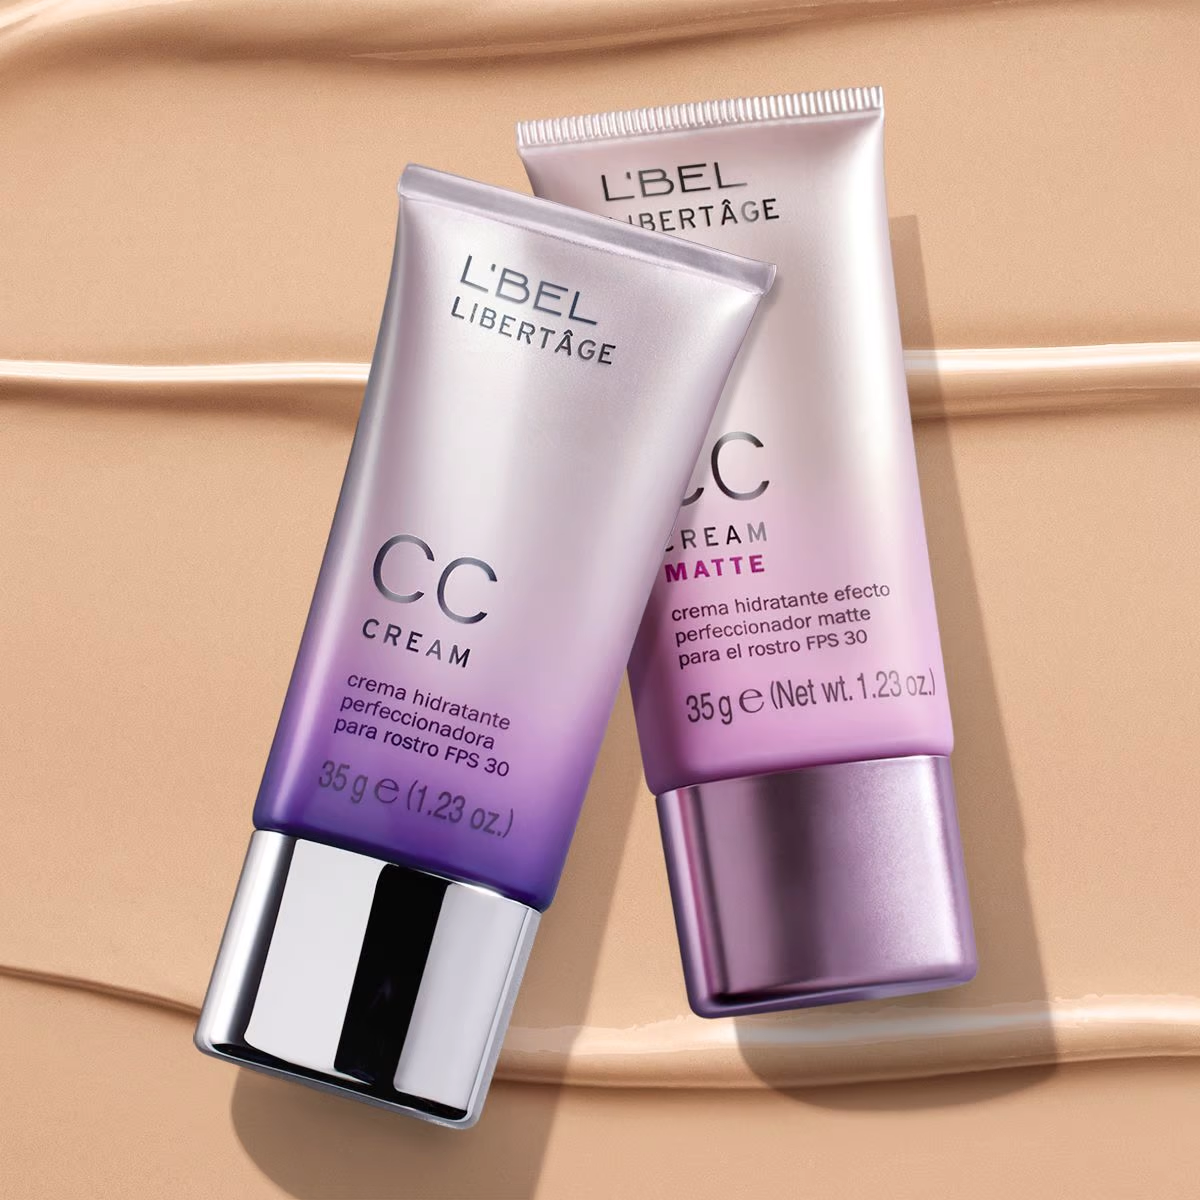 CC Cream Matte - Crema hidratante perfeccionadora para el rostro